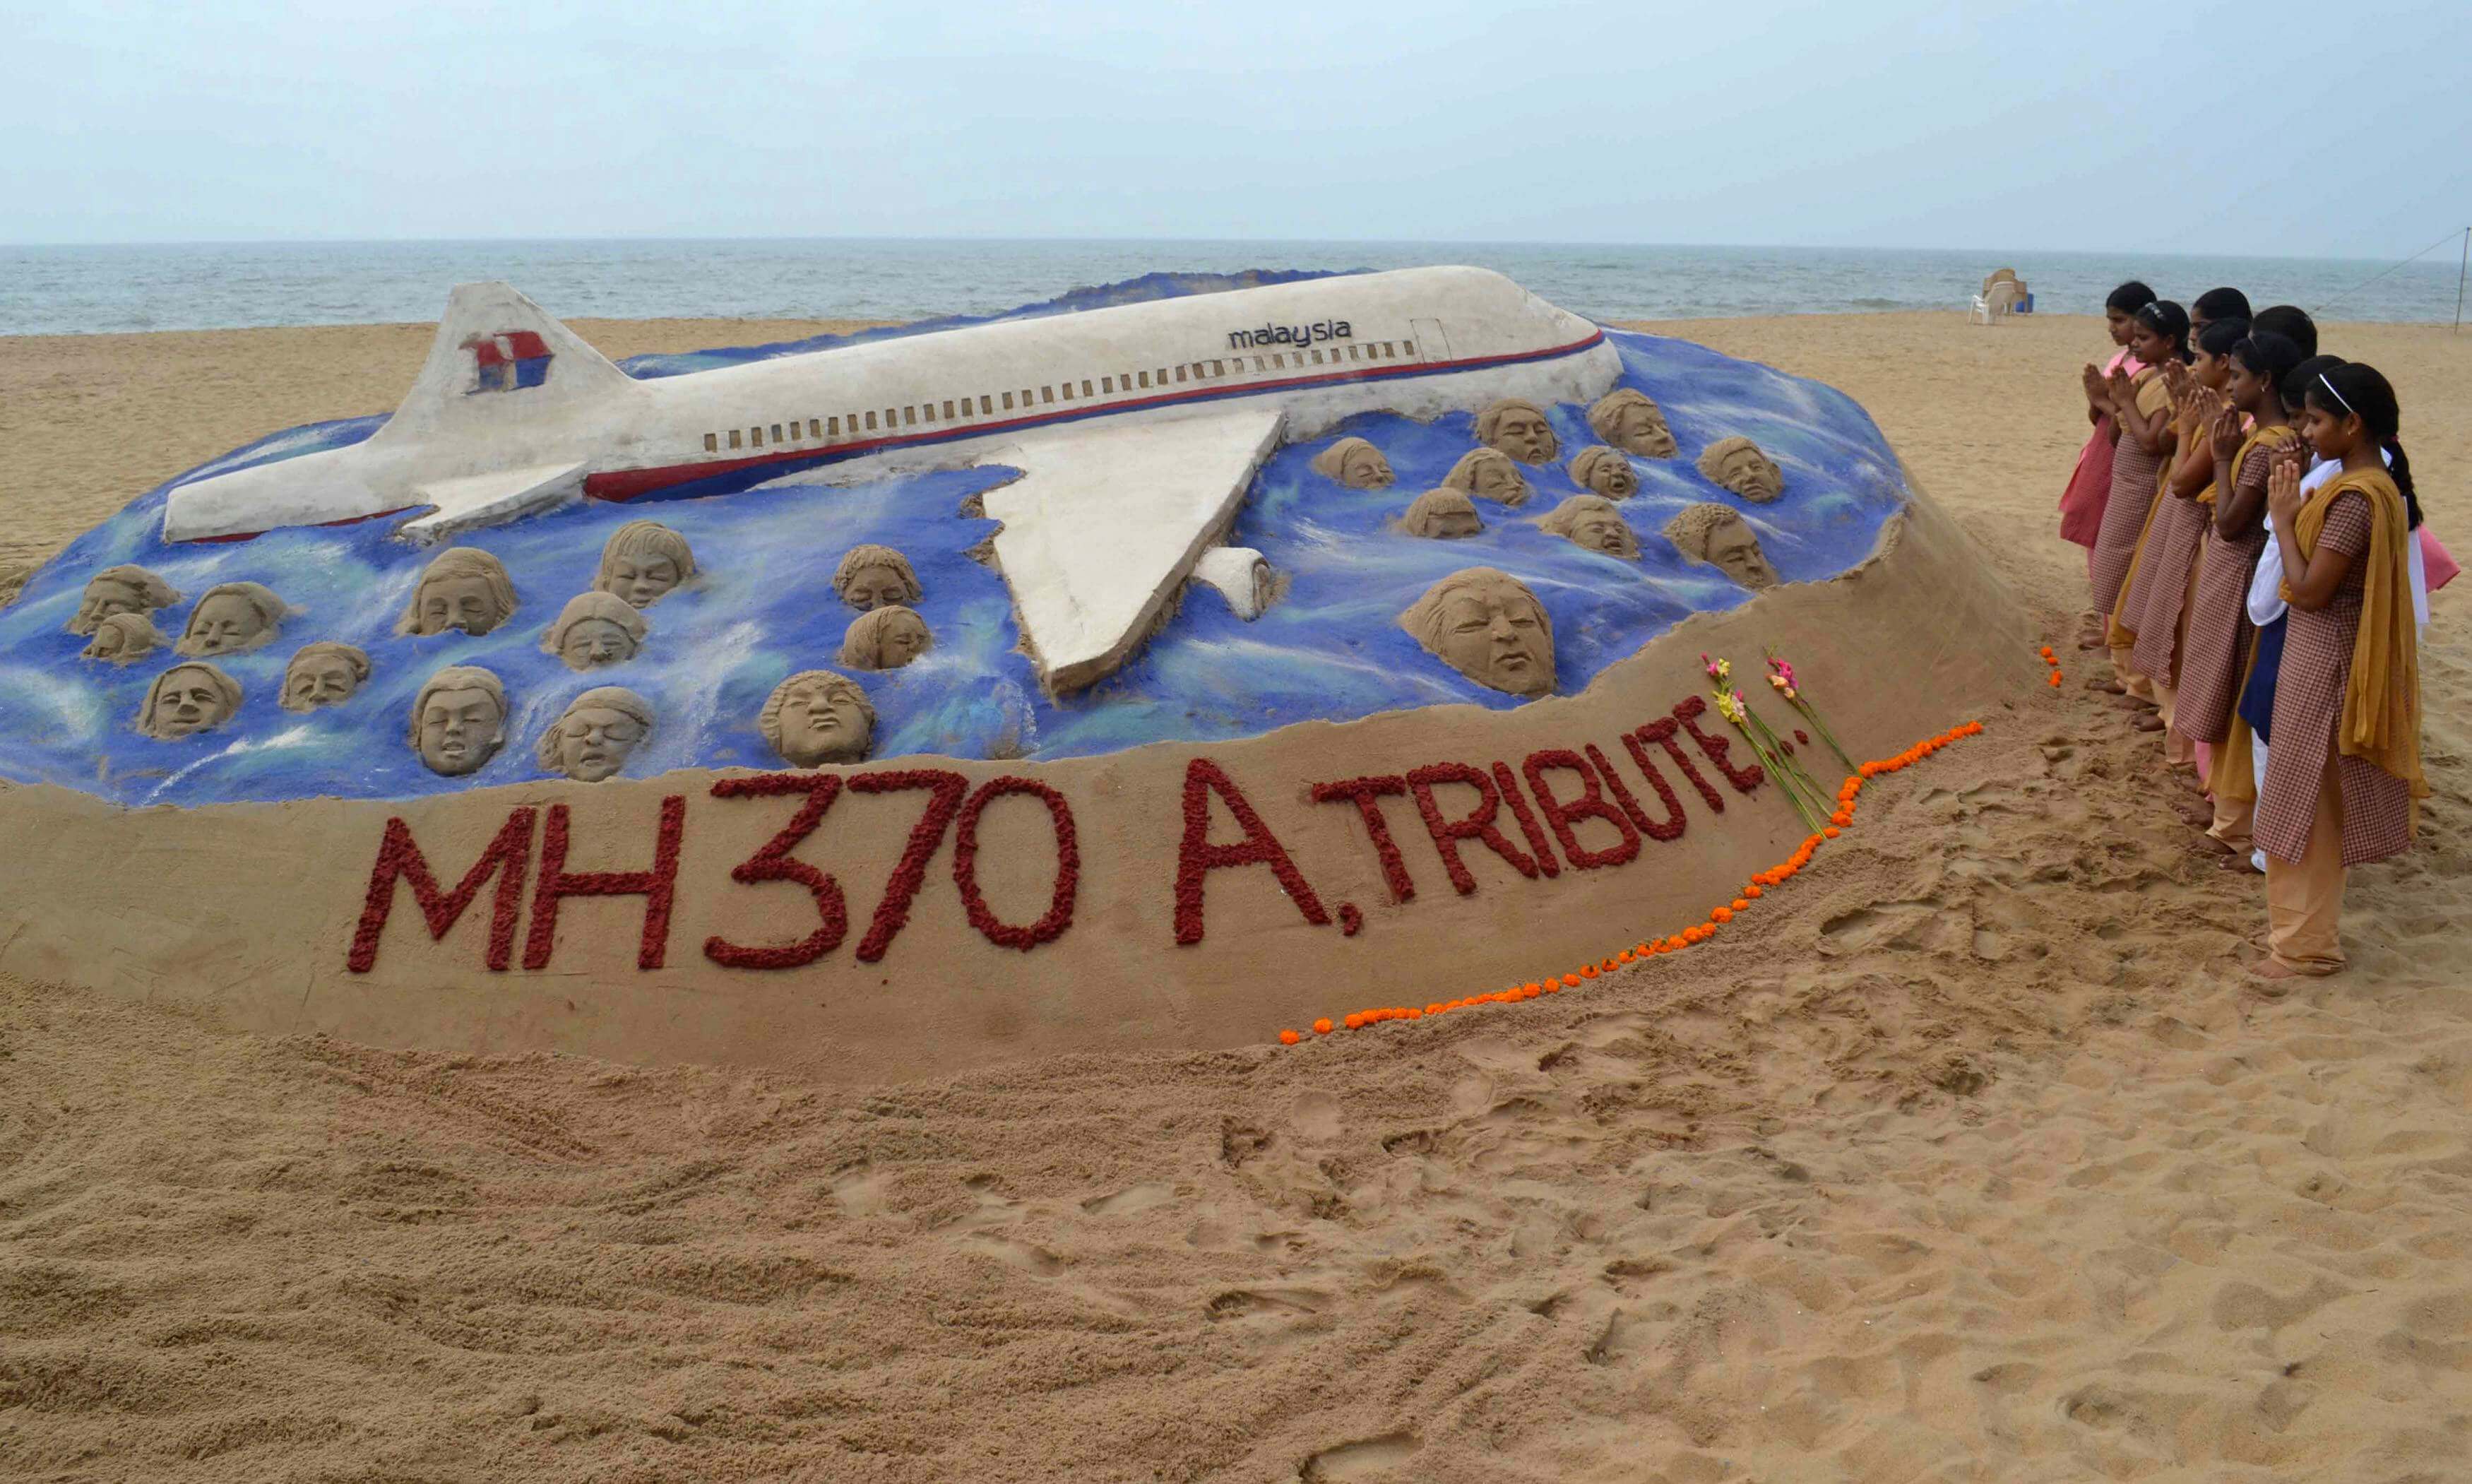 Πτήση MH 370: Πετούσε ενώ οι επιβάτες ήταν νεκροί – Νέα θεωρία για την εξαφάνιση